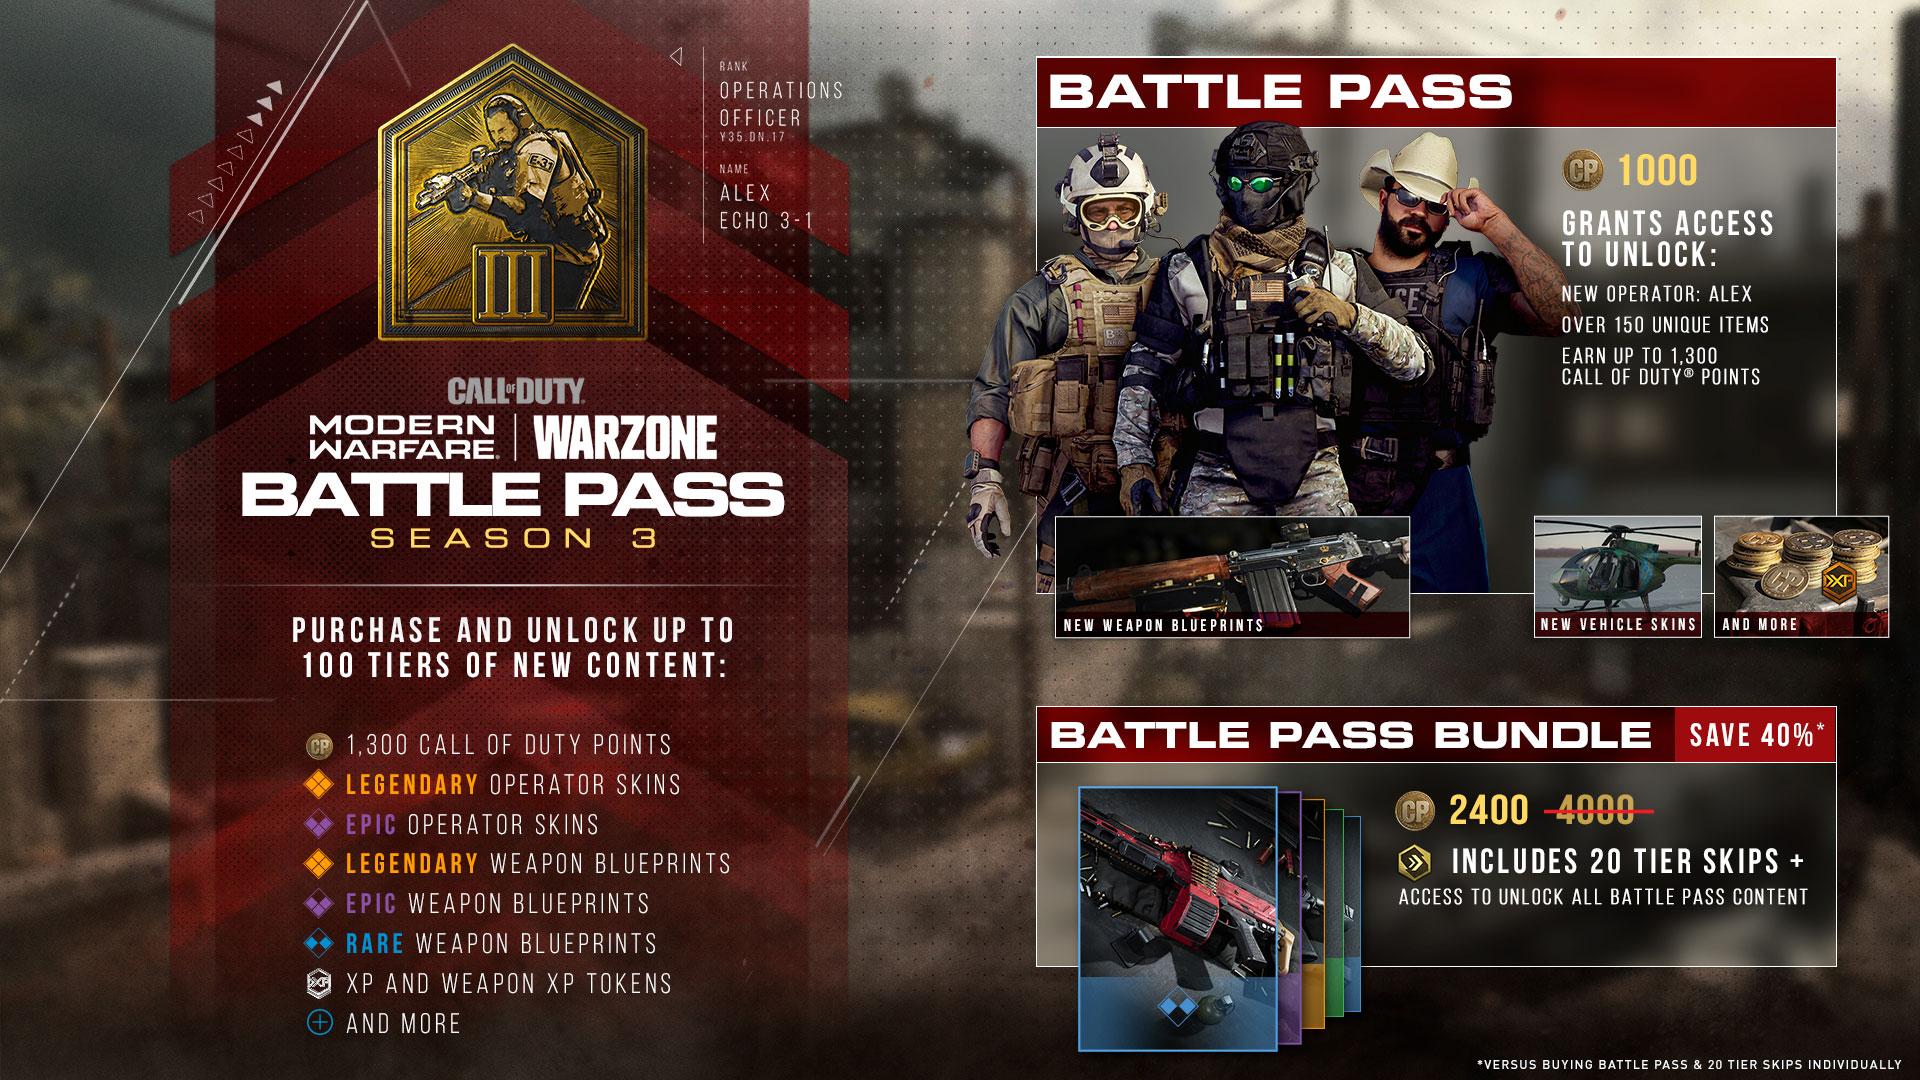 Modern Warfare Season 3 battle pass rewards. 